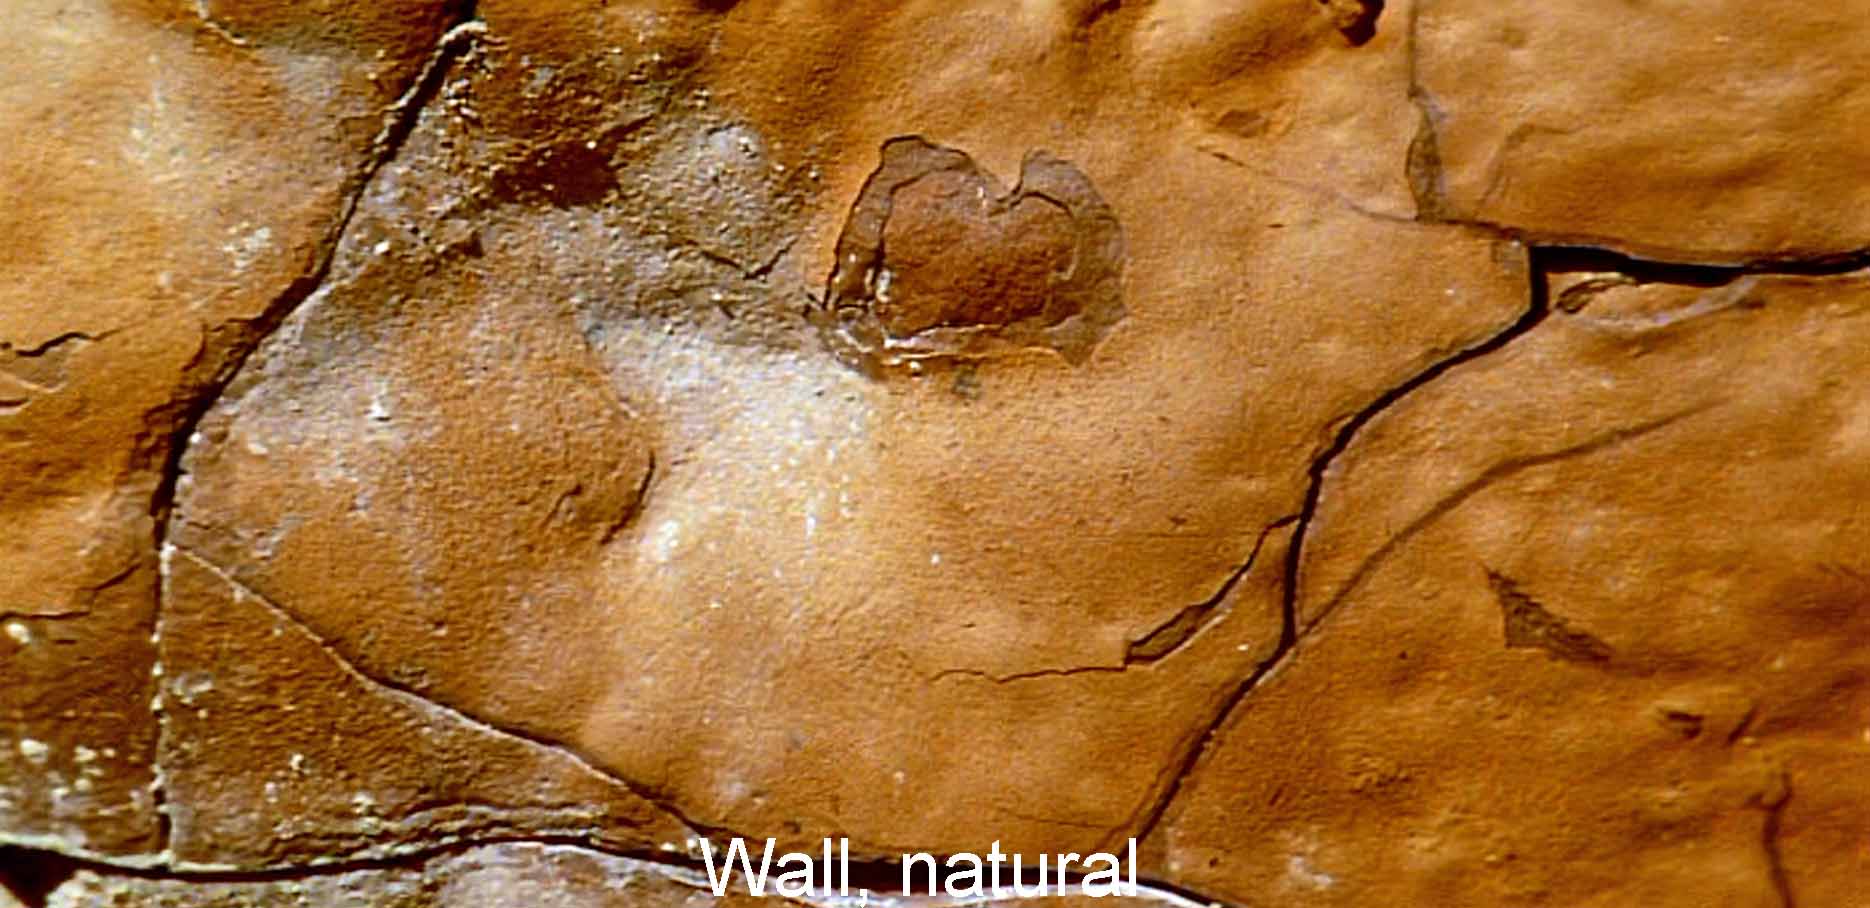 Wall, natural